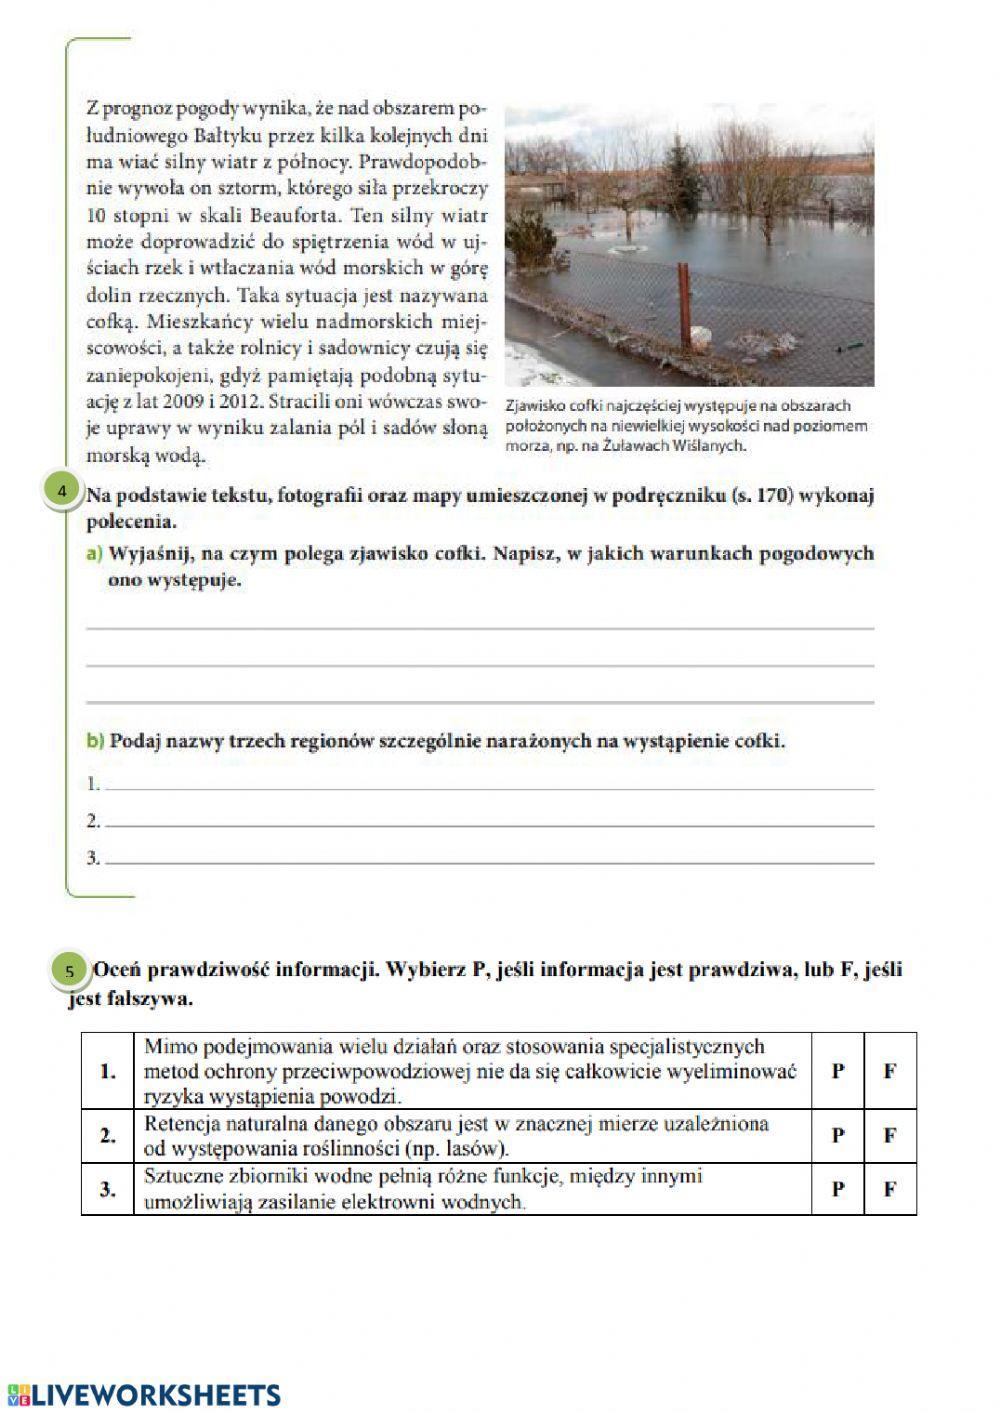 Ochrona przeciwpowodziowa a występowanie i skutki powodzi